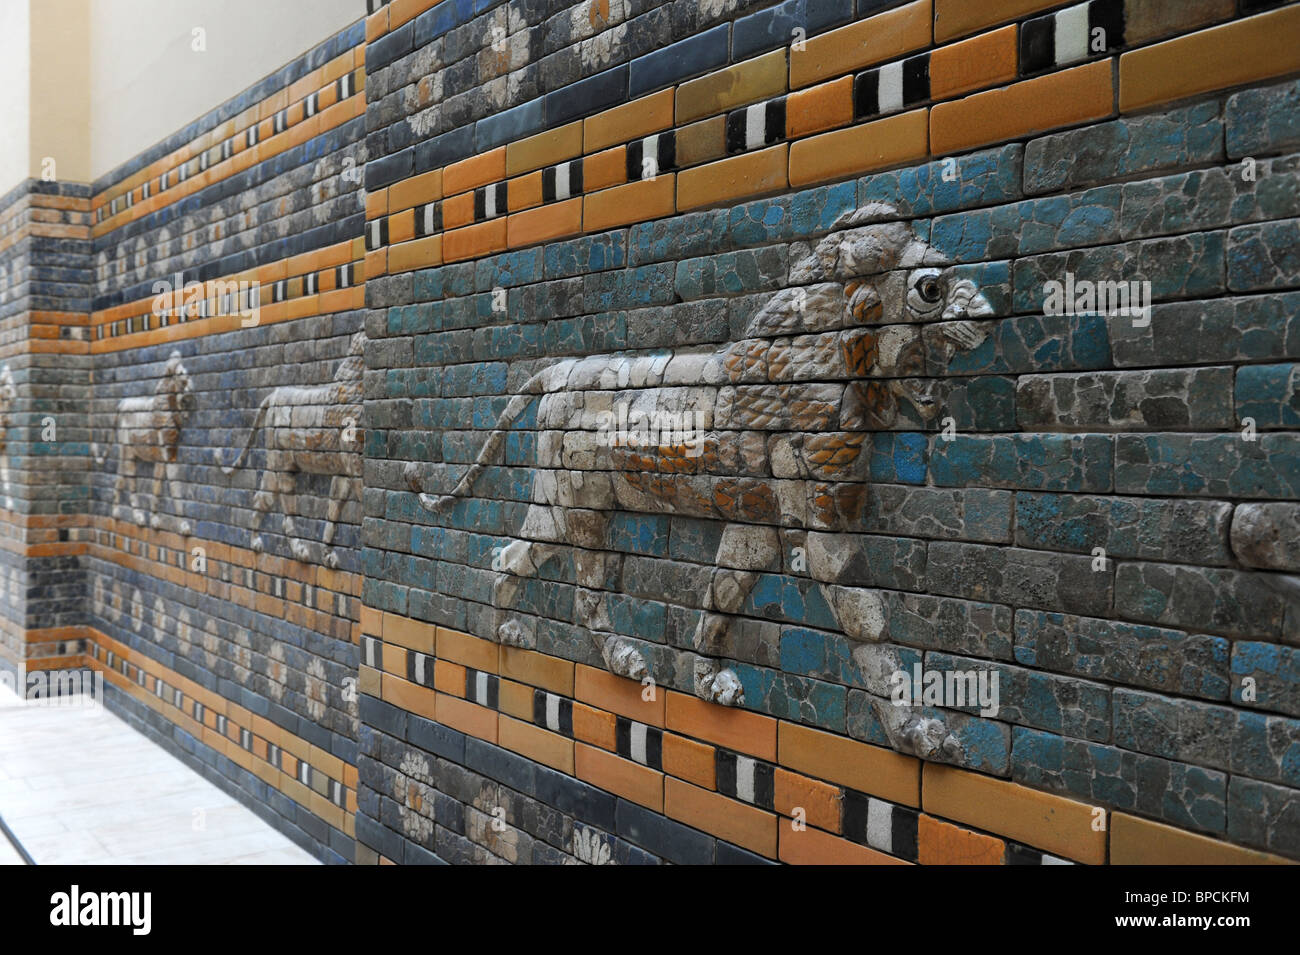 Les anciens murs de Babylone, le Pergamonmuseum Musée de Pergame à Berlin Allemagne Île Musée Deutschland Europe Banque D'Images